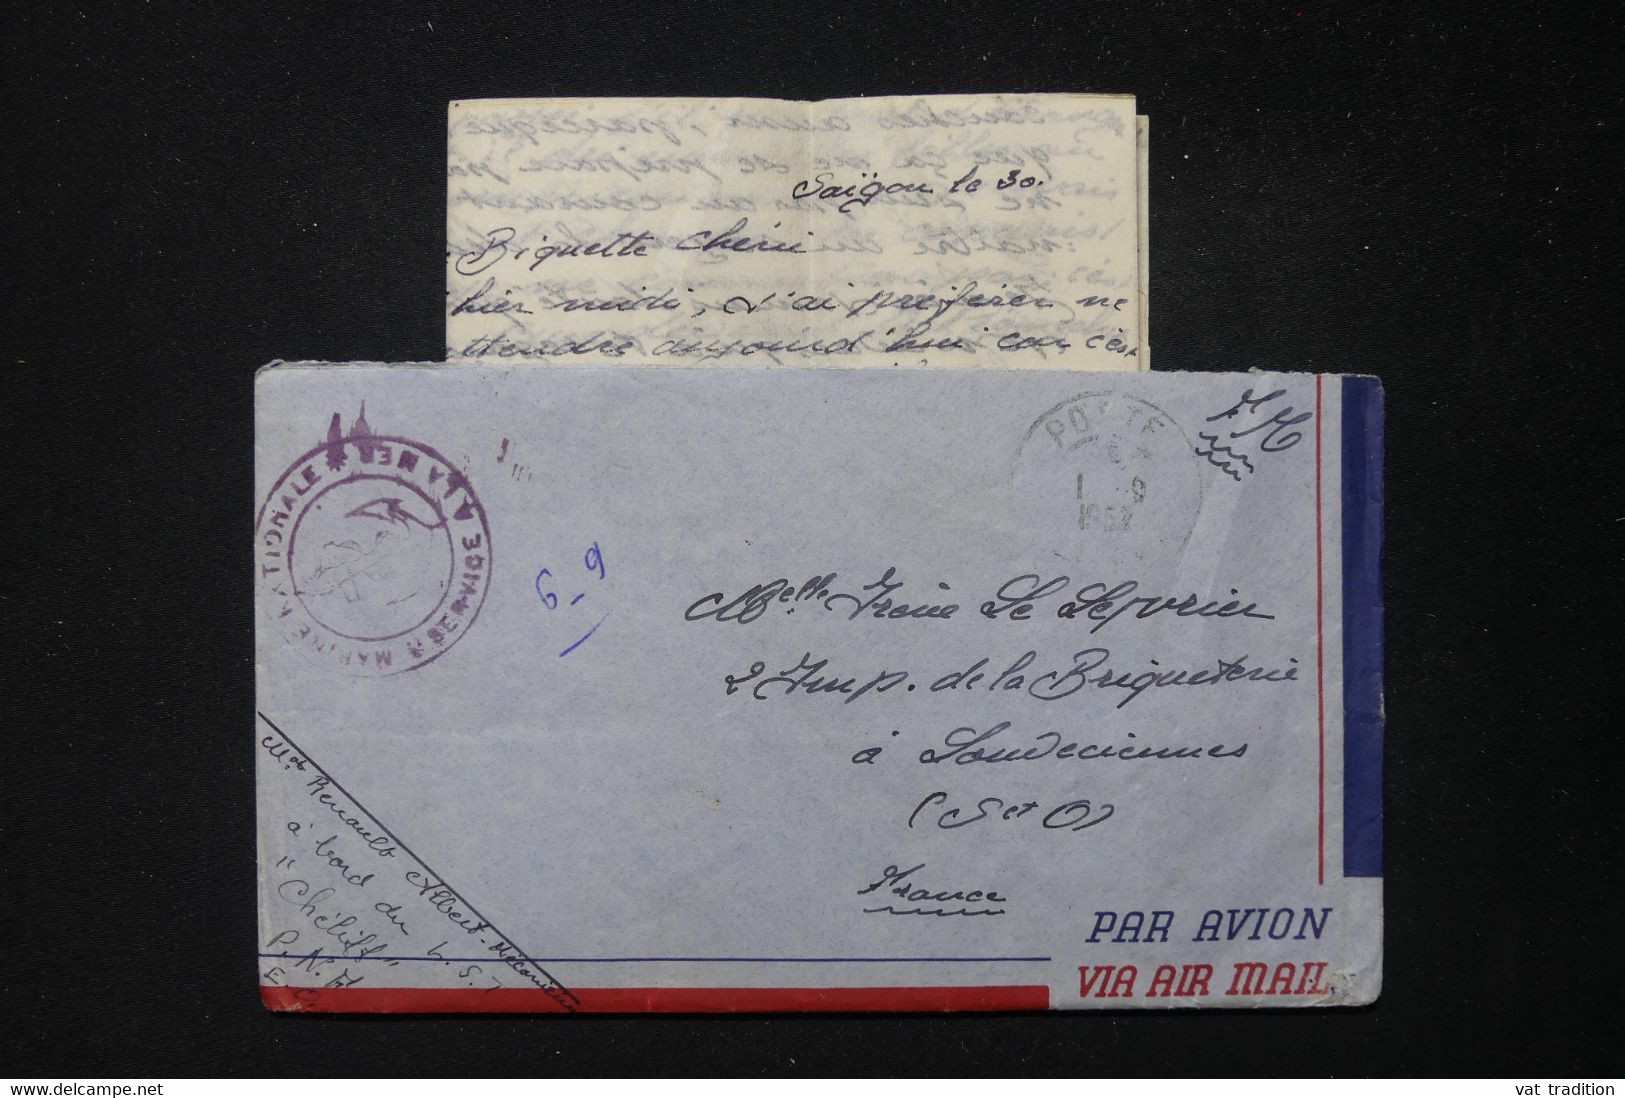 FRANCE / INDOCHINE - Enveloppe Avec Contenu D'un Marin En Indochine En 1952 Pour La France - L 83853 - Guerra De Indochina/Vietnam